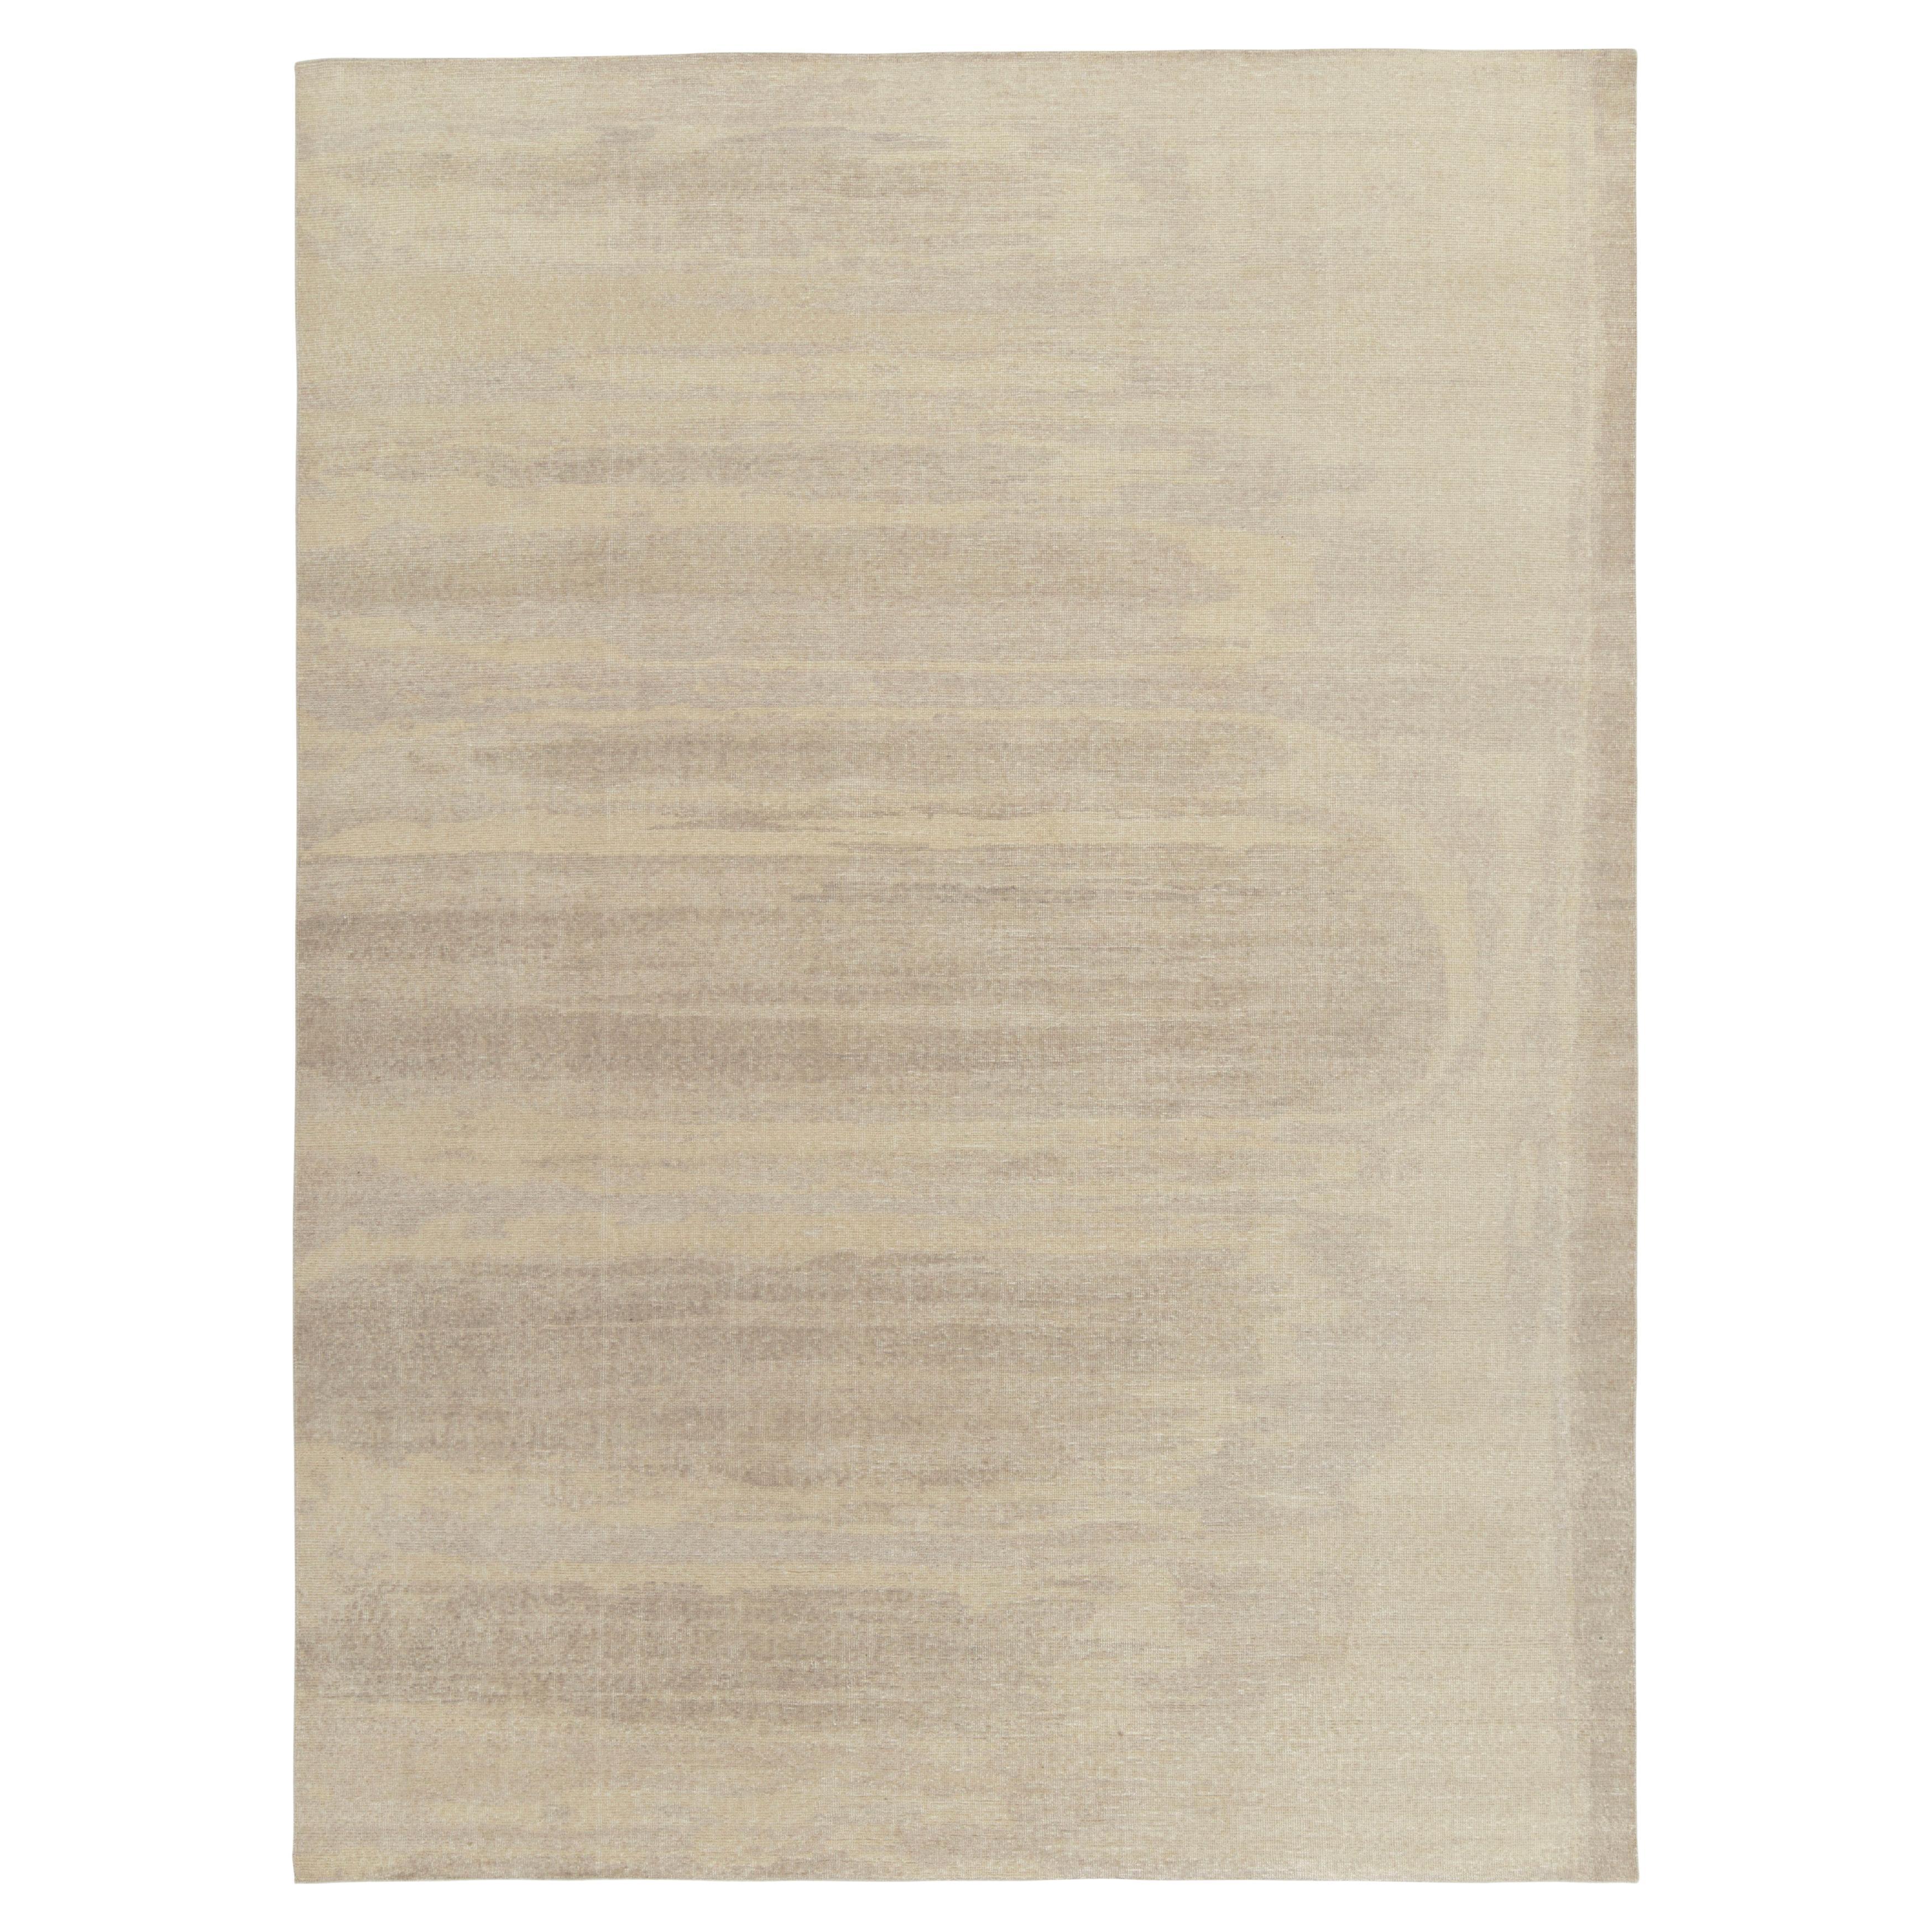 Moderner Teppich im Distressed-Stil von Teppich & Kelim in Grau, Beige-Braun mit abstraktem Muster